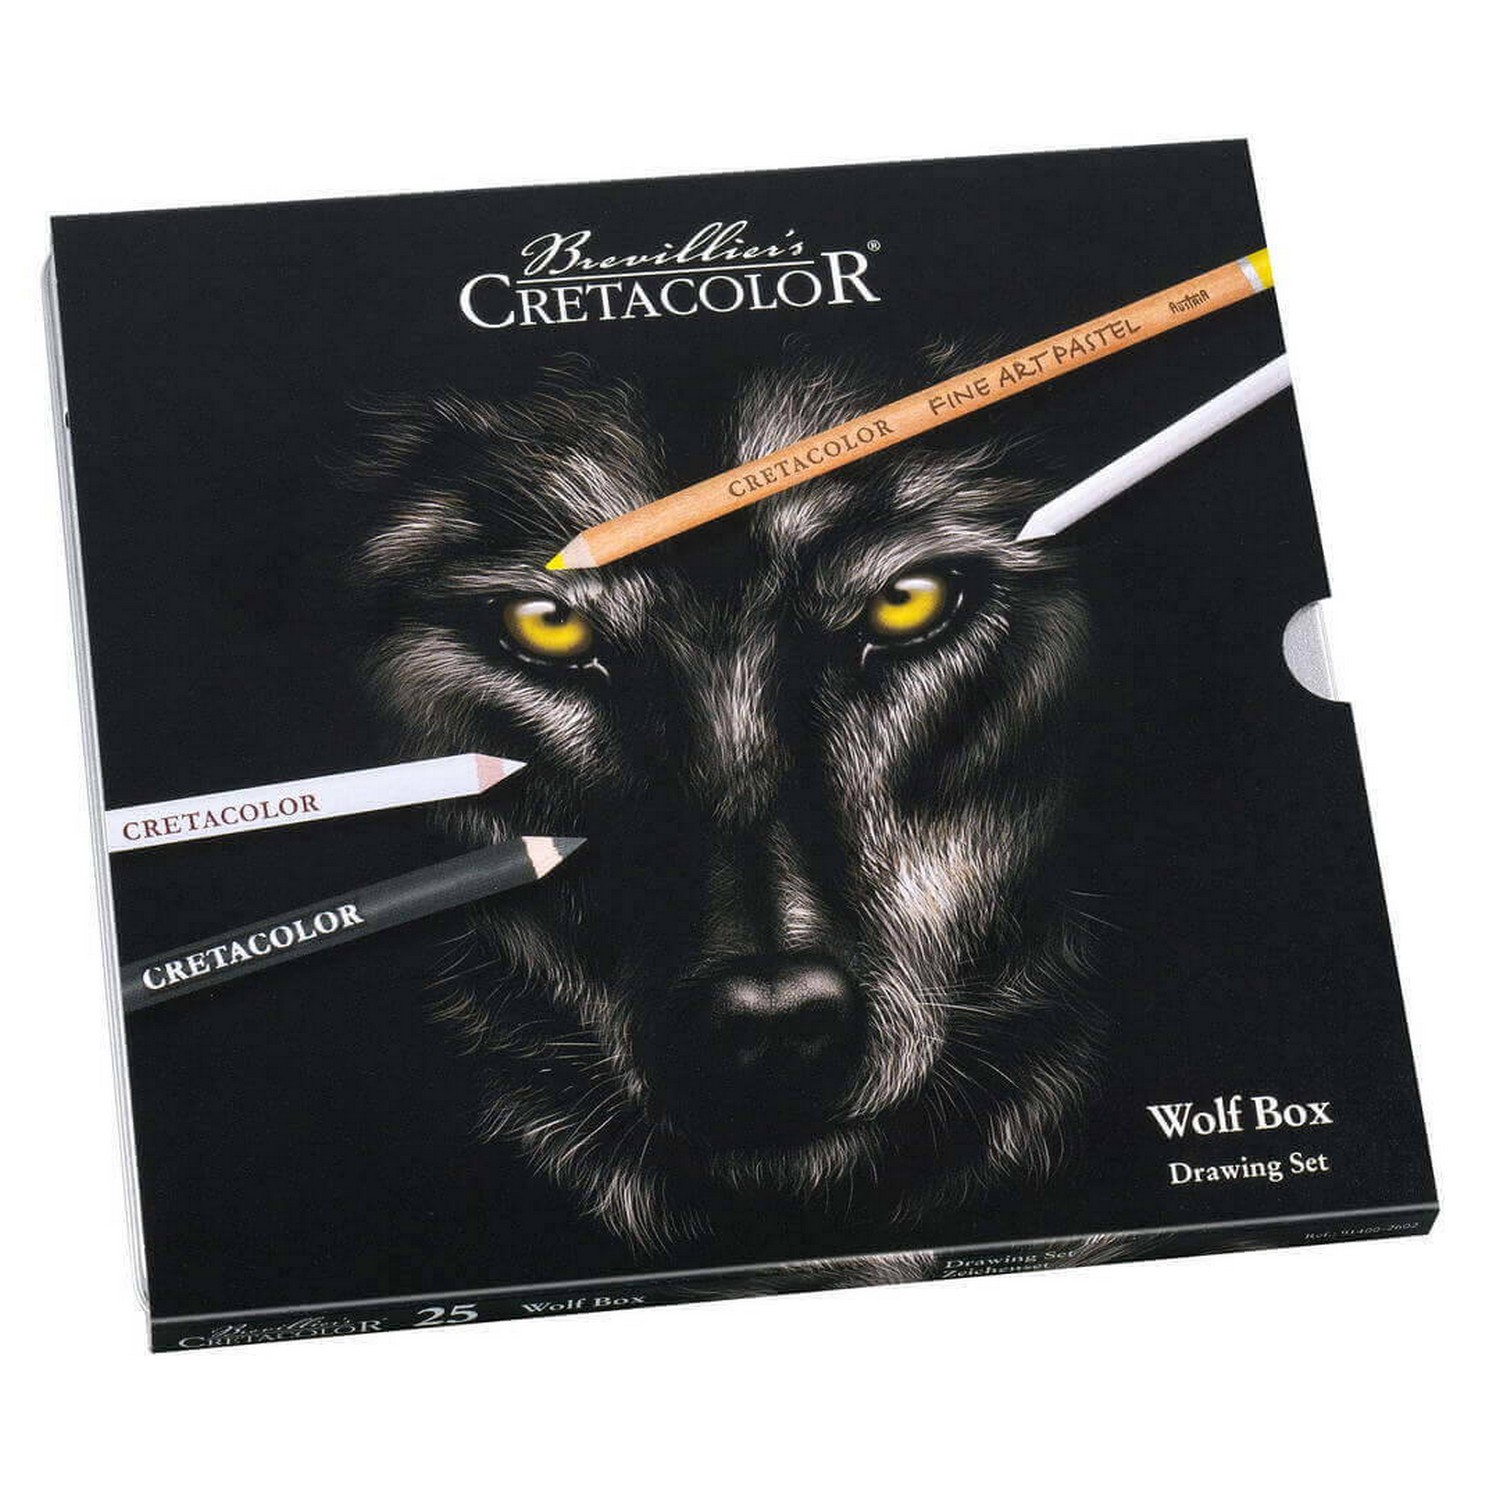 фото Художественный набор cretacolor wolf box, металлическая коробка 25 предметов